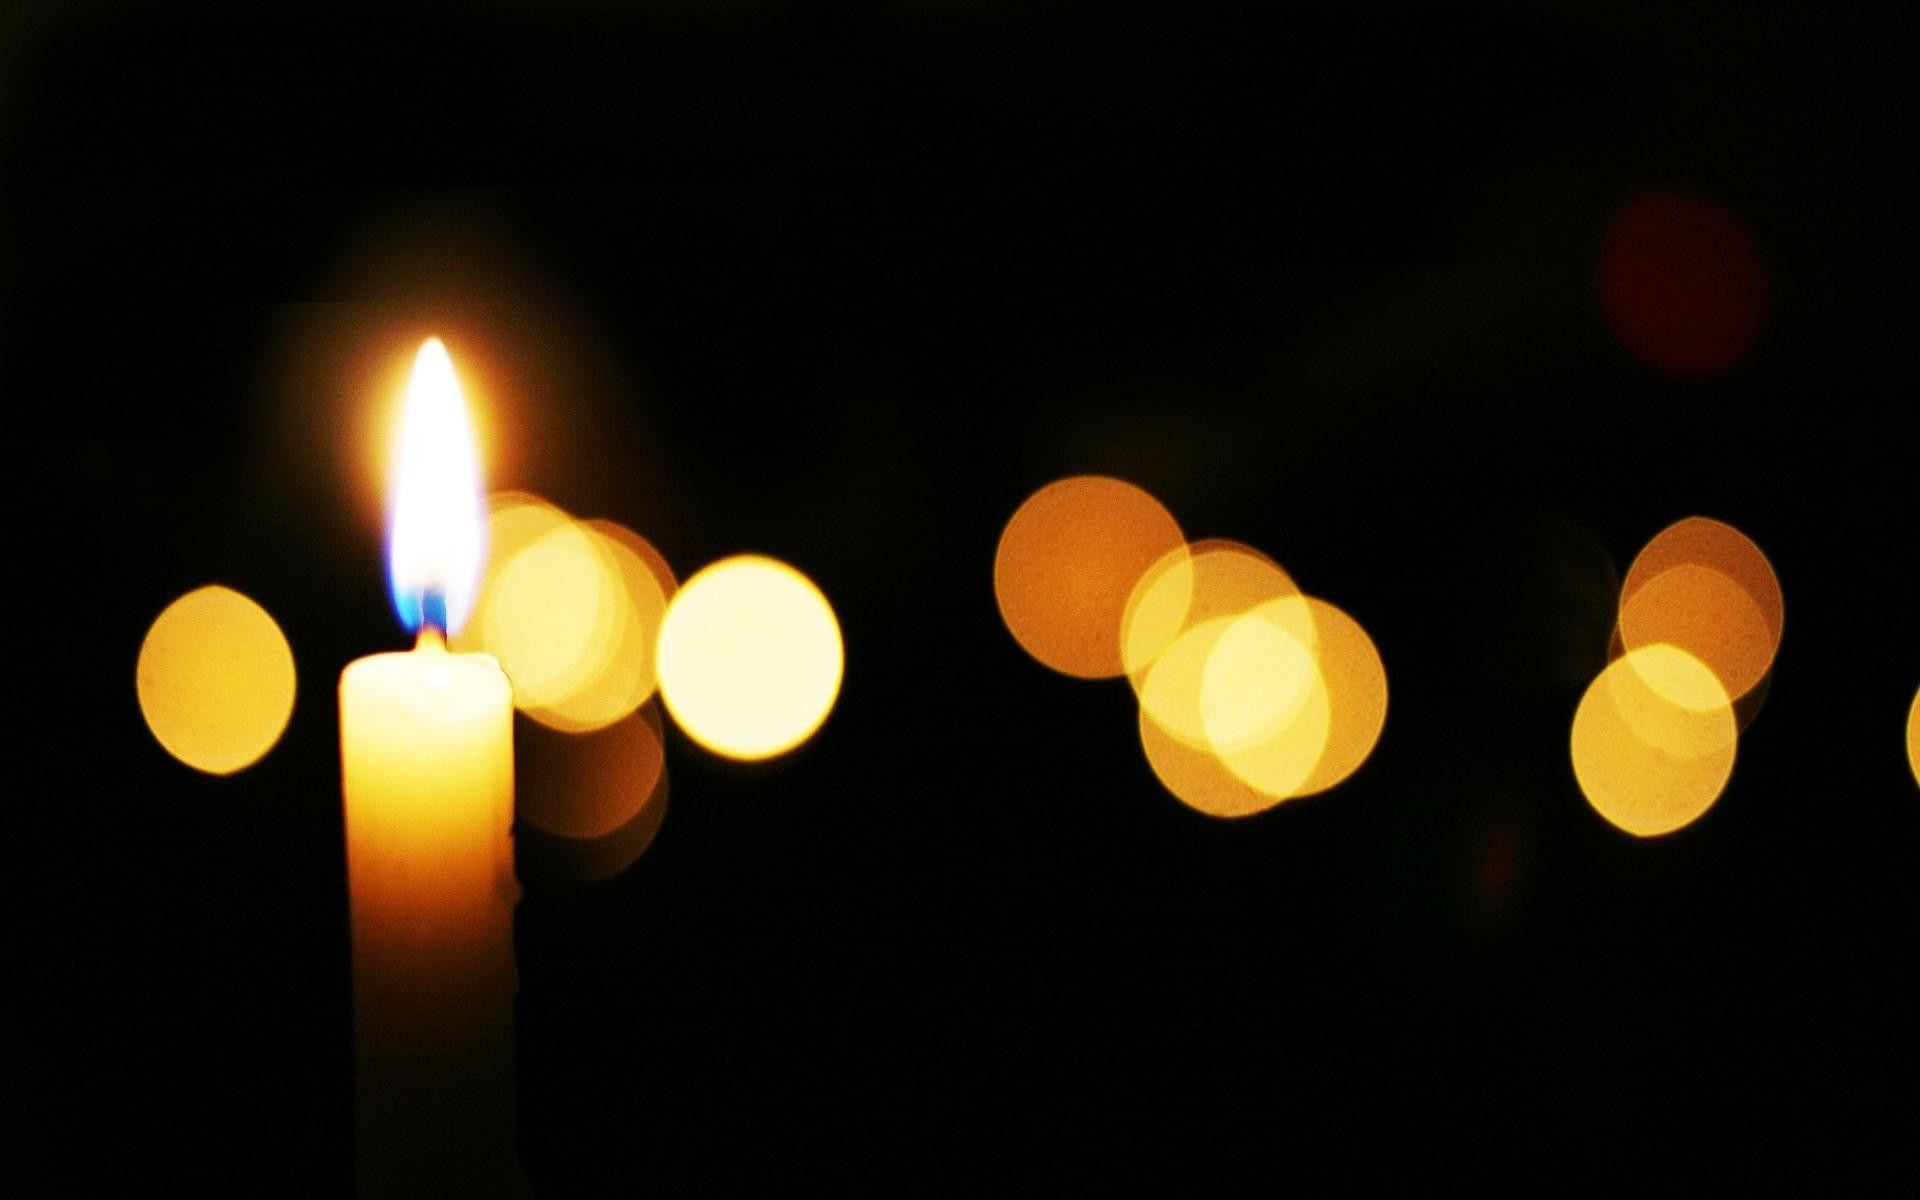 عکس شمع زرد روشن برای تسلیت و ابراز همدردی 